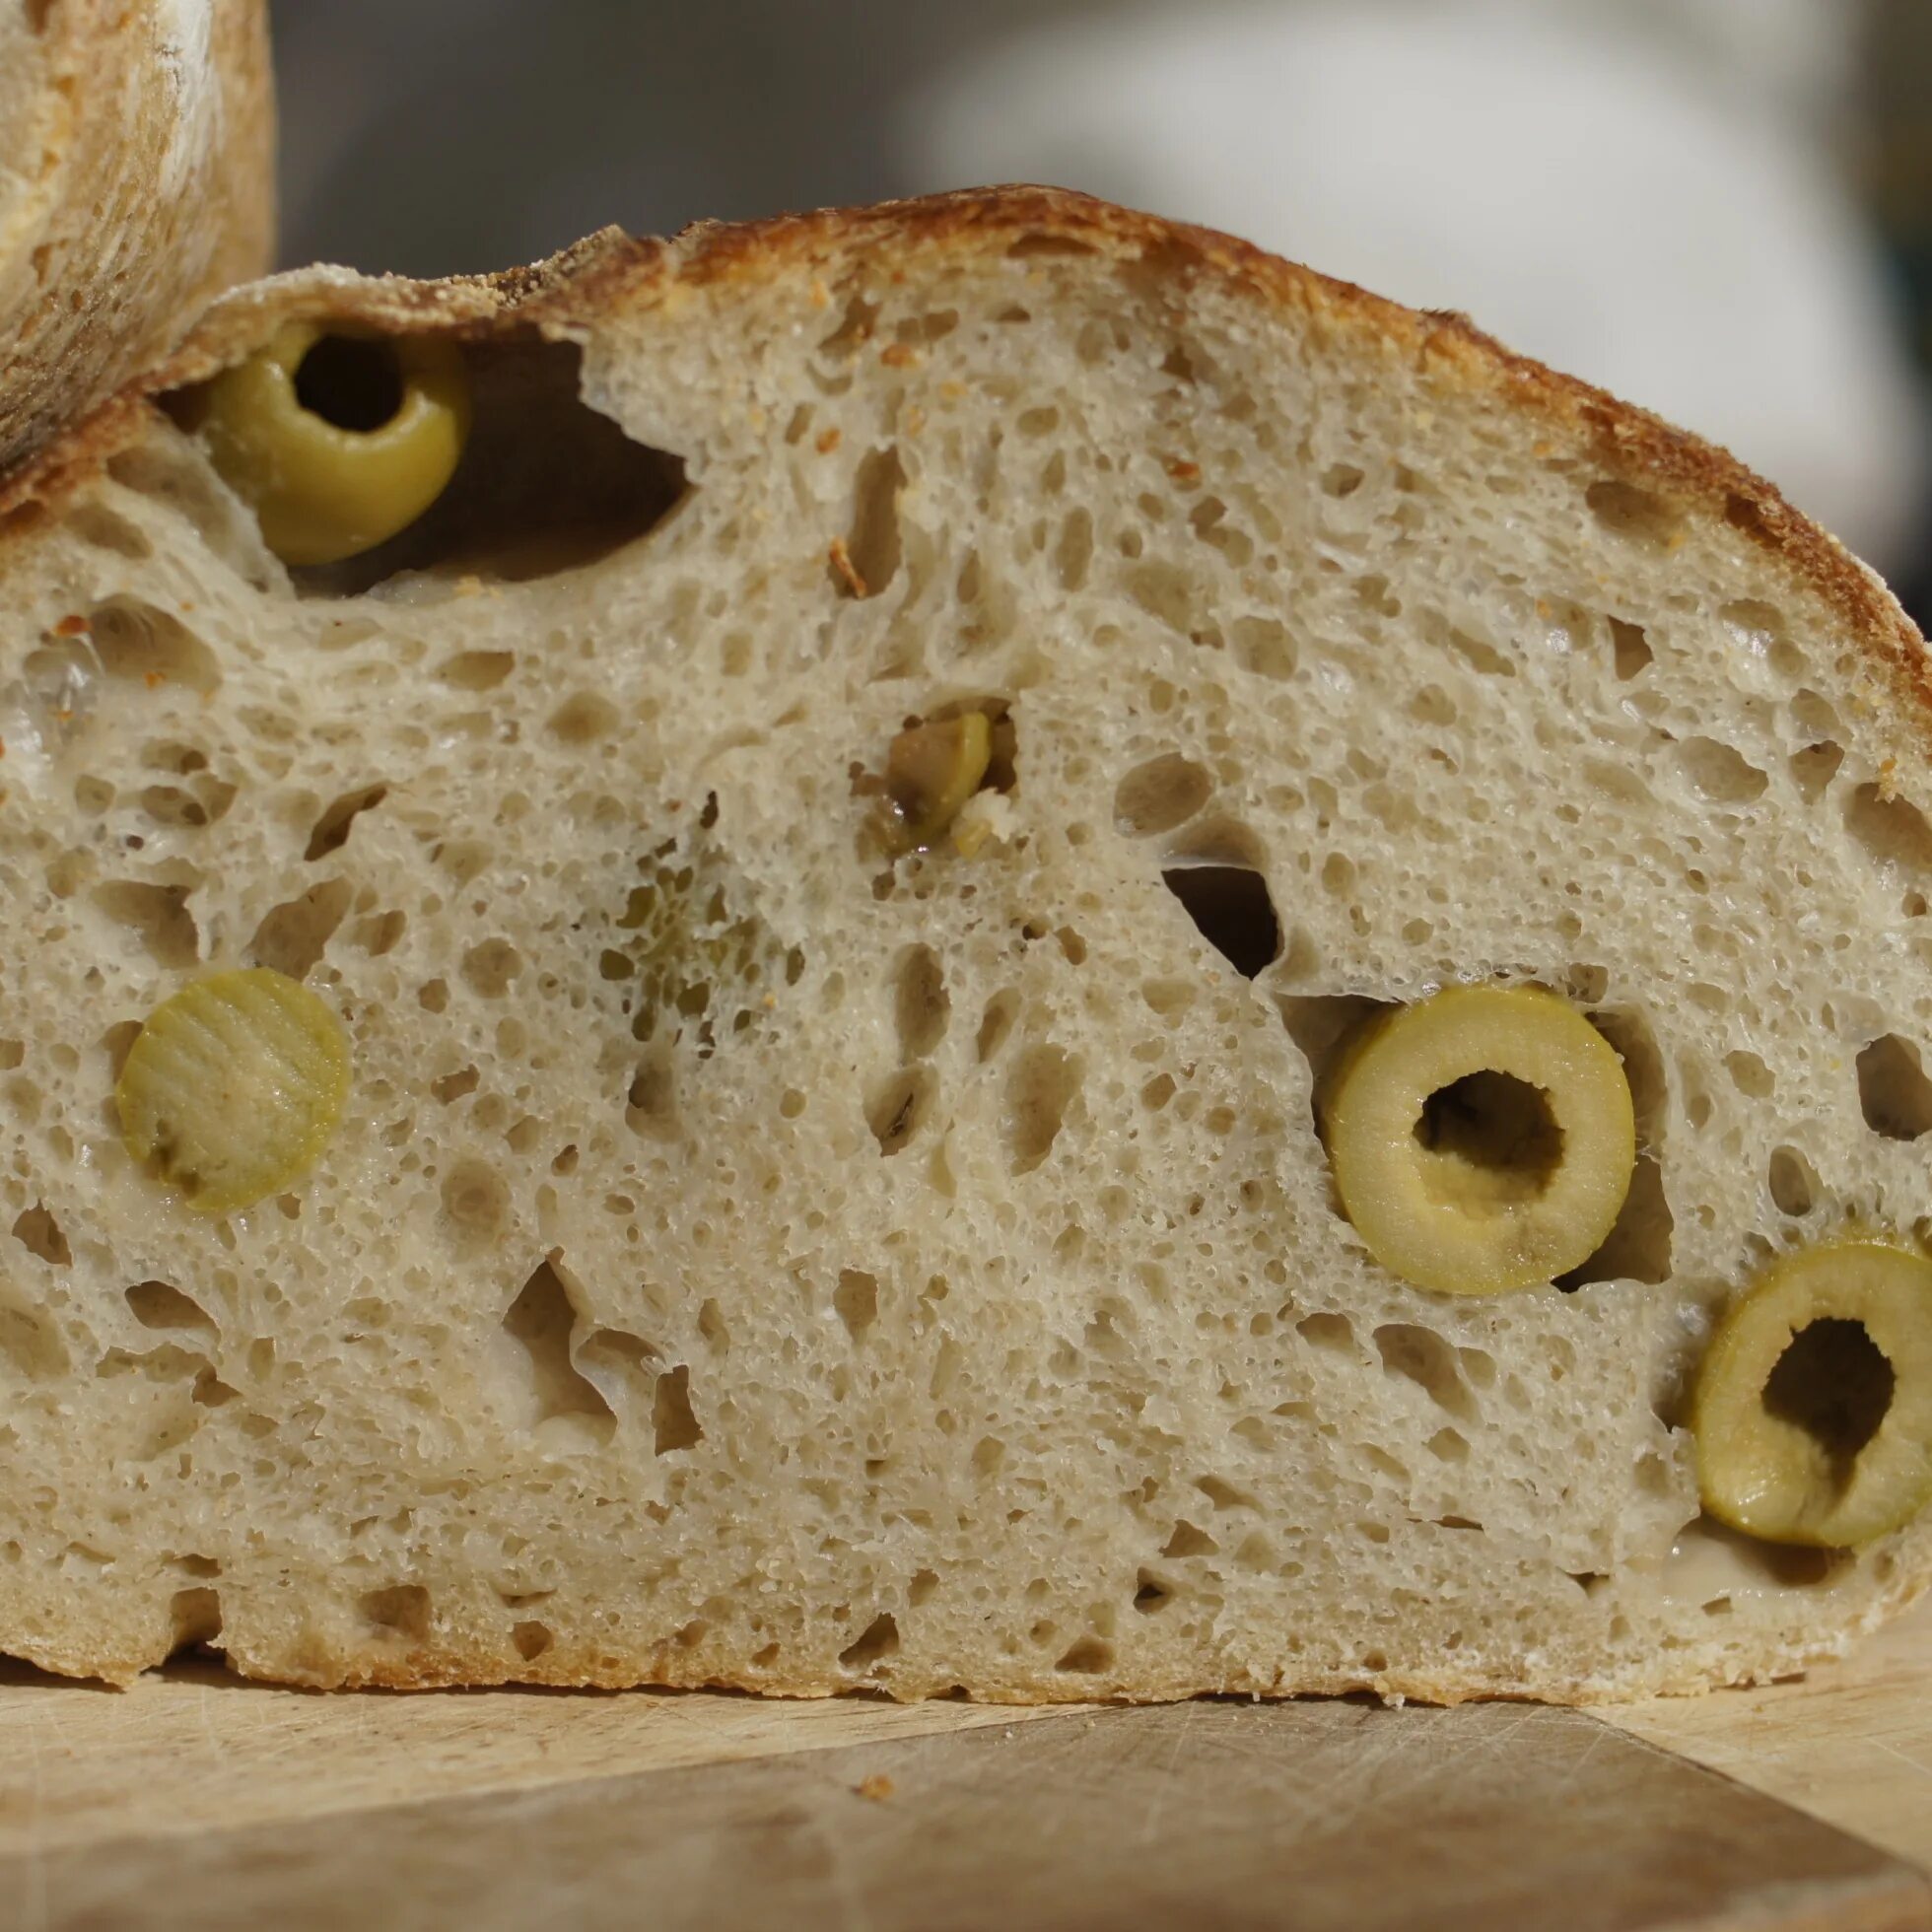 Хлеб. Хлеб с оливками. Хлеб с маслинами. Хлебобулочные изделия с добавками.